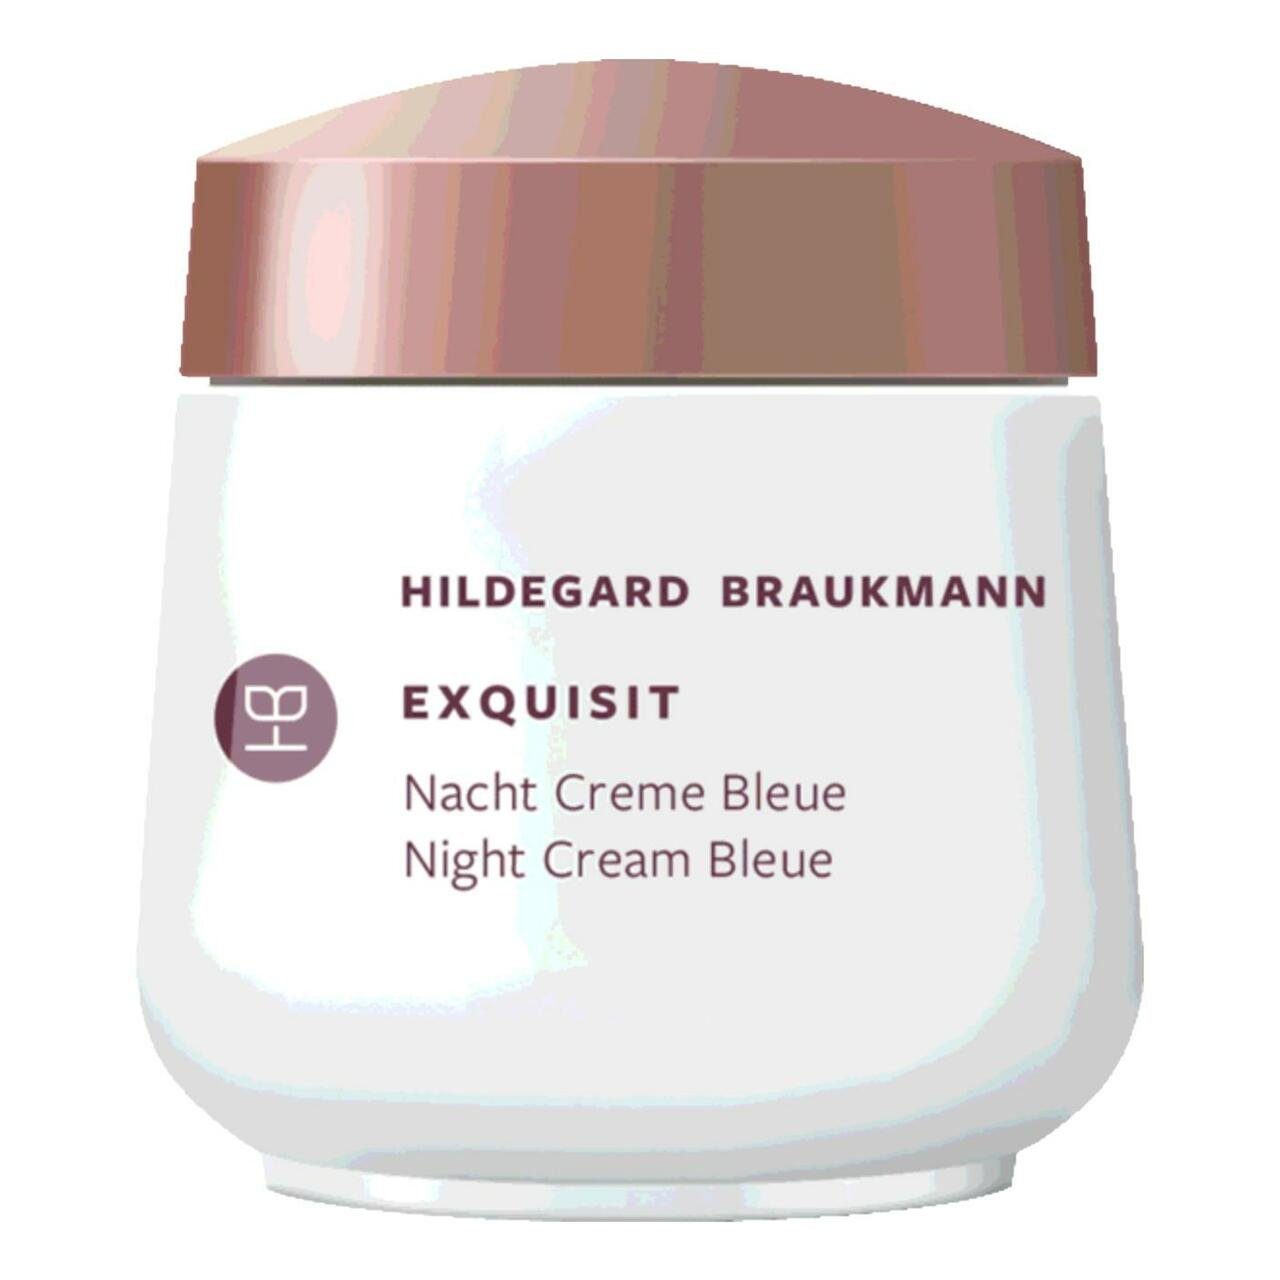 Hildegard Braukmann Nachtcreme Exquisit Creme Bleue Nacht